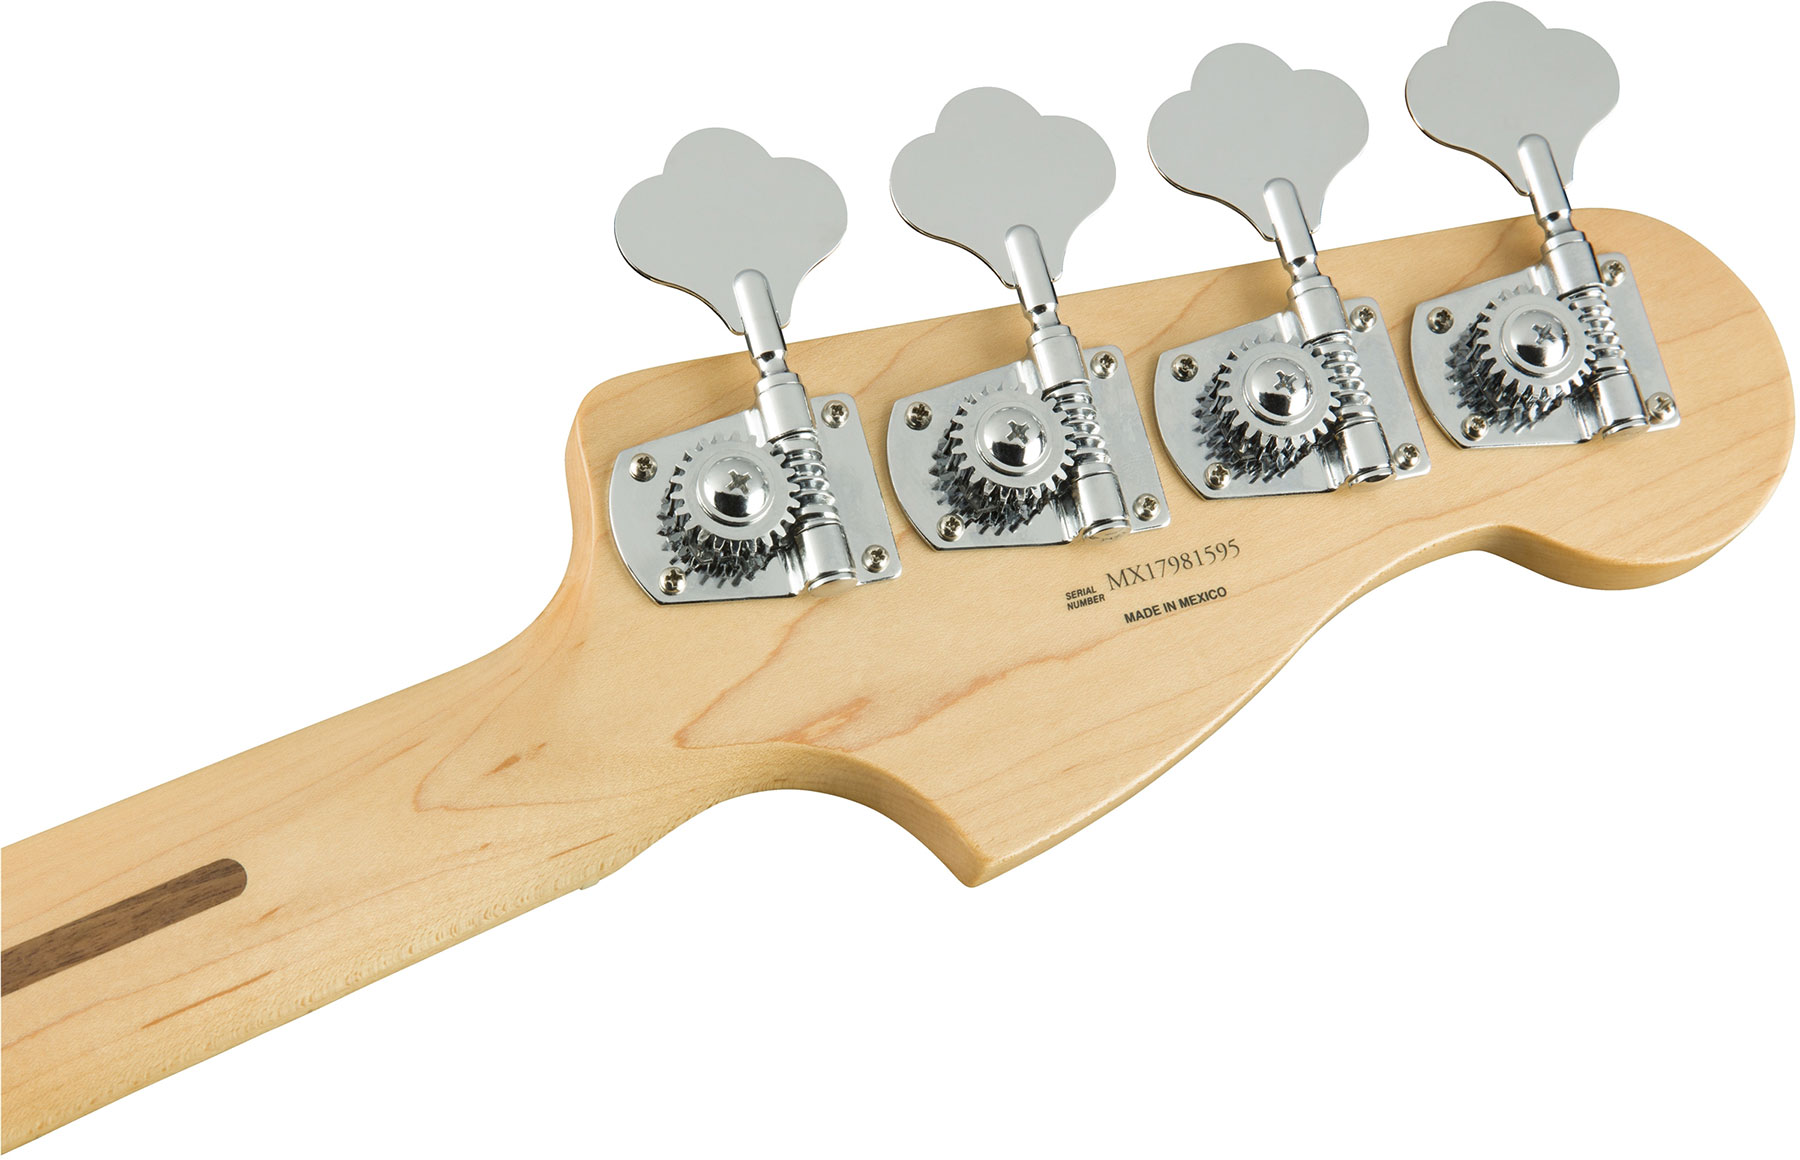 Fender Jazz Bass Player Lh Gaucher Mex Mn - Polar White - Basse Électrique Solid Body - Variation 4